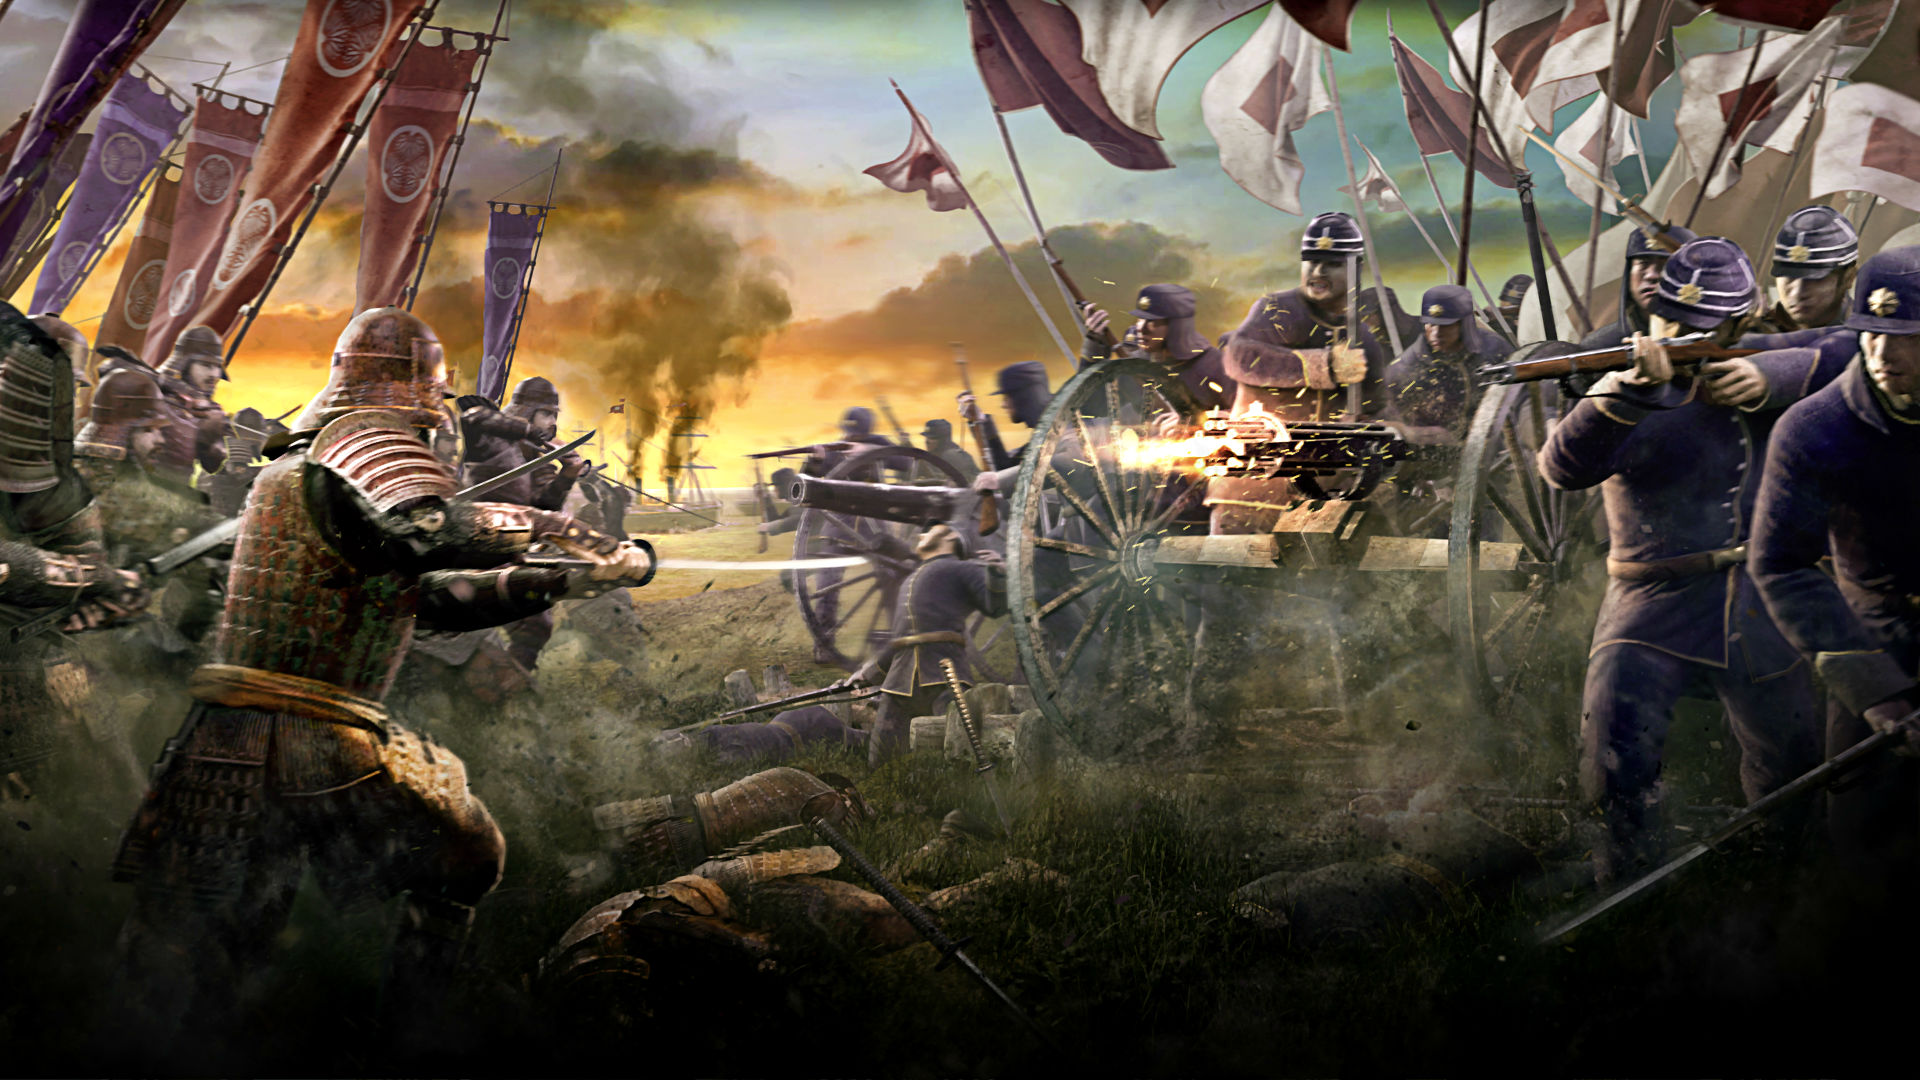 fondo de pantalla de guerra total,juego de acción y aventura,juego de pc,juego de disparos,juegos,cg artwork